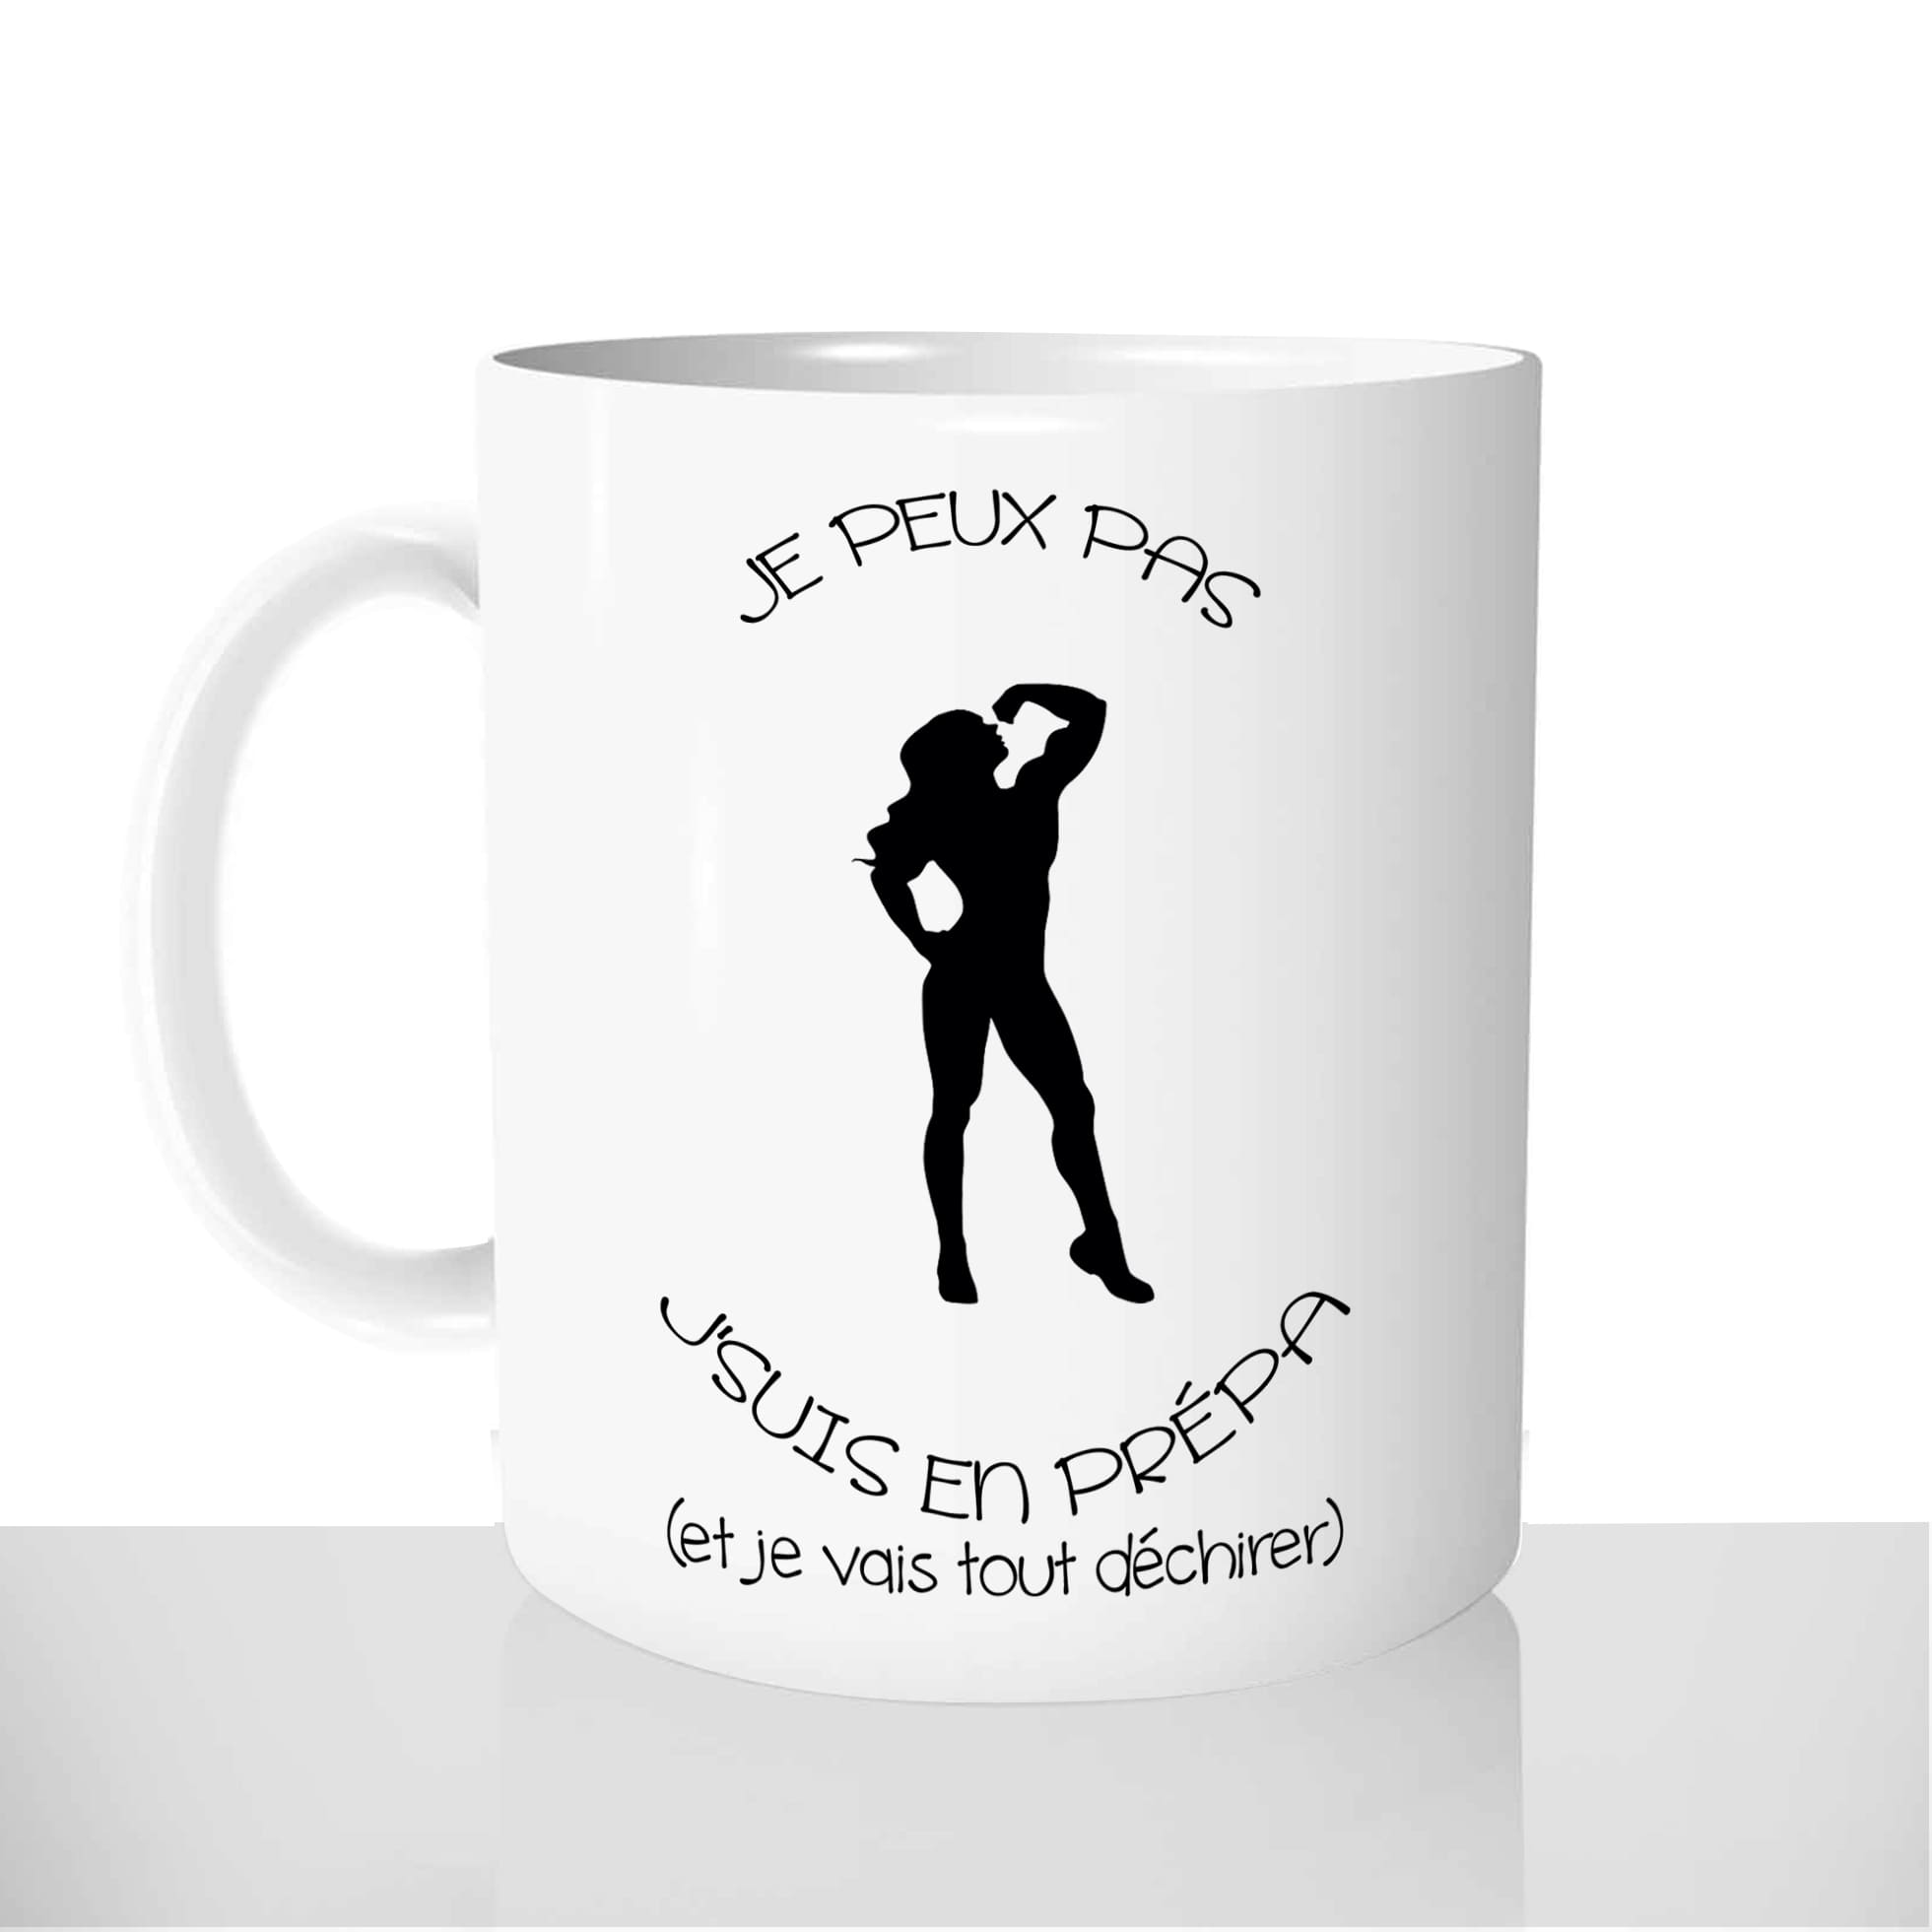 mug-blanc-céramique-11oz-france-mugs-surprise-pas-cher-je-peux-pas-prépa-bikini-wellness-fitness-figure-sport-musculation-sèche-wnbf